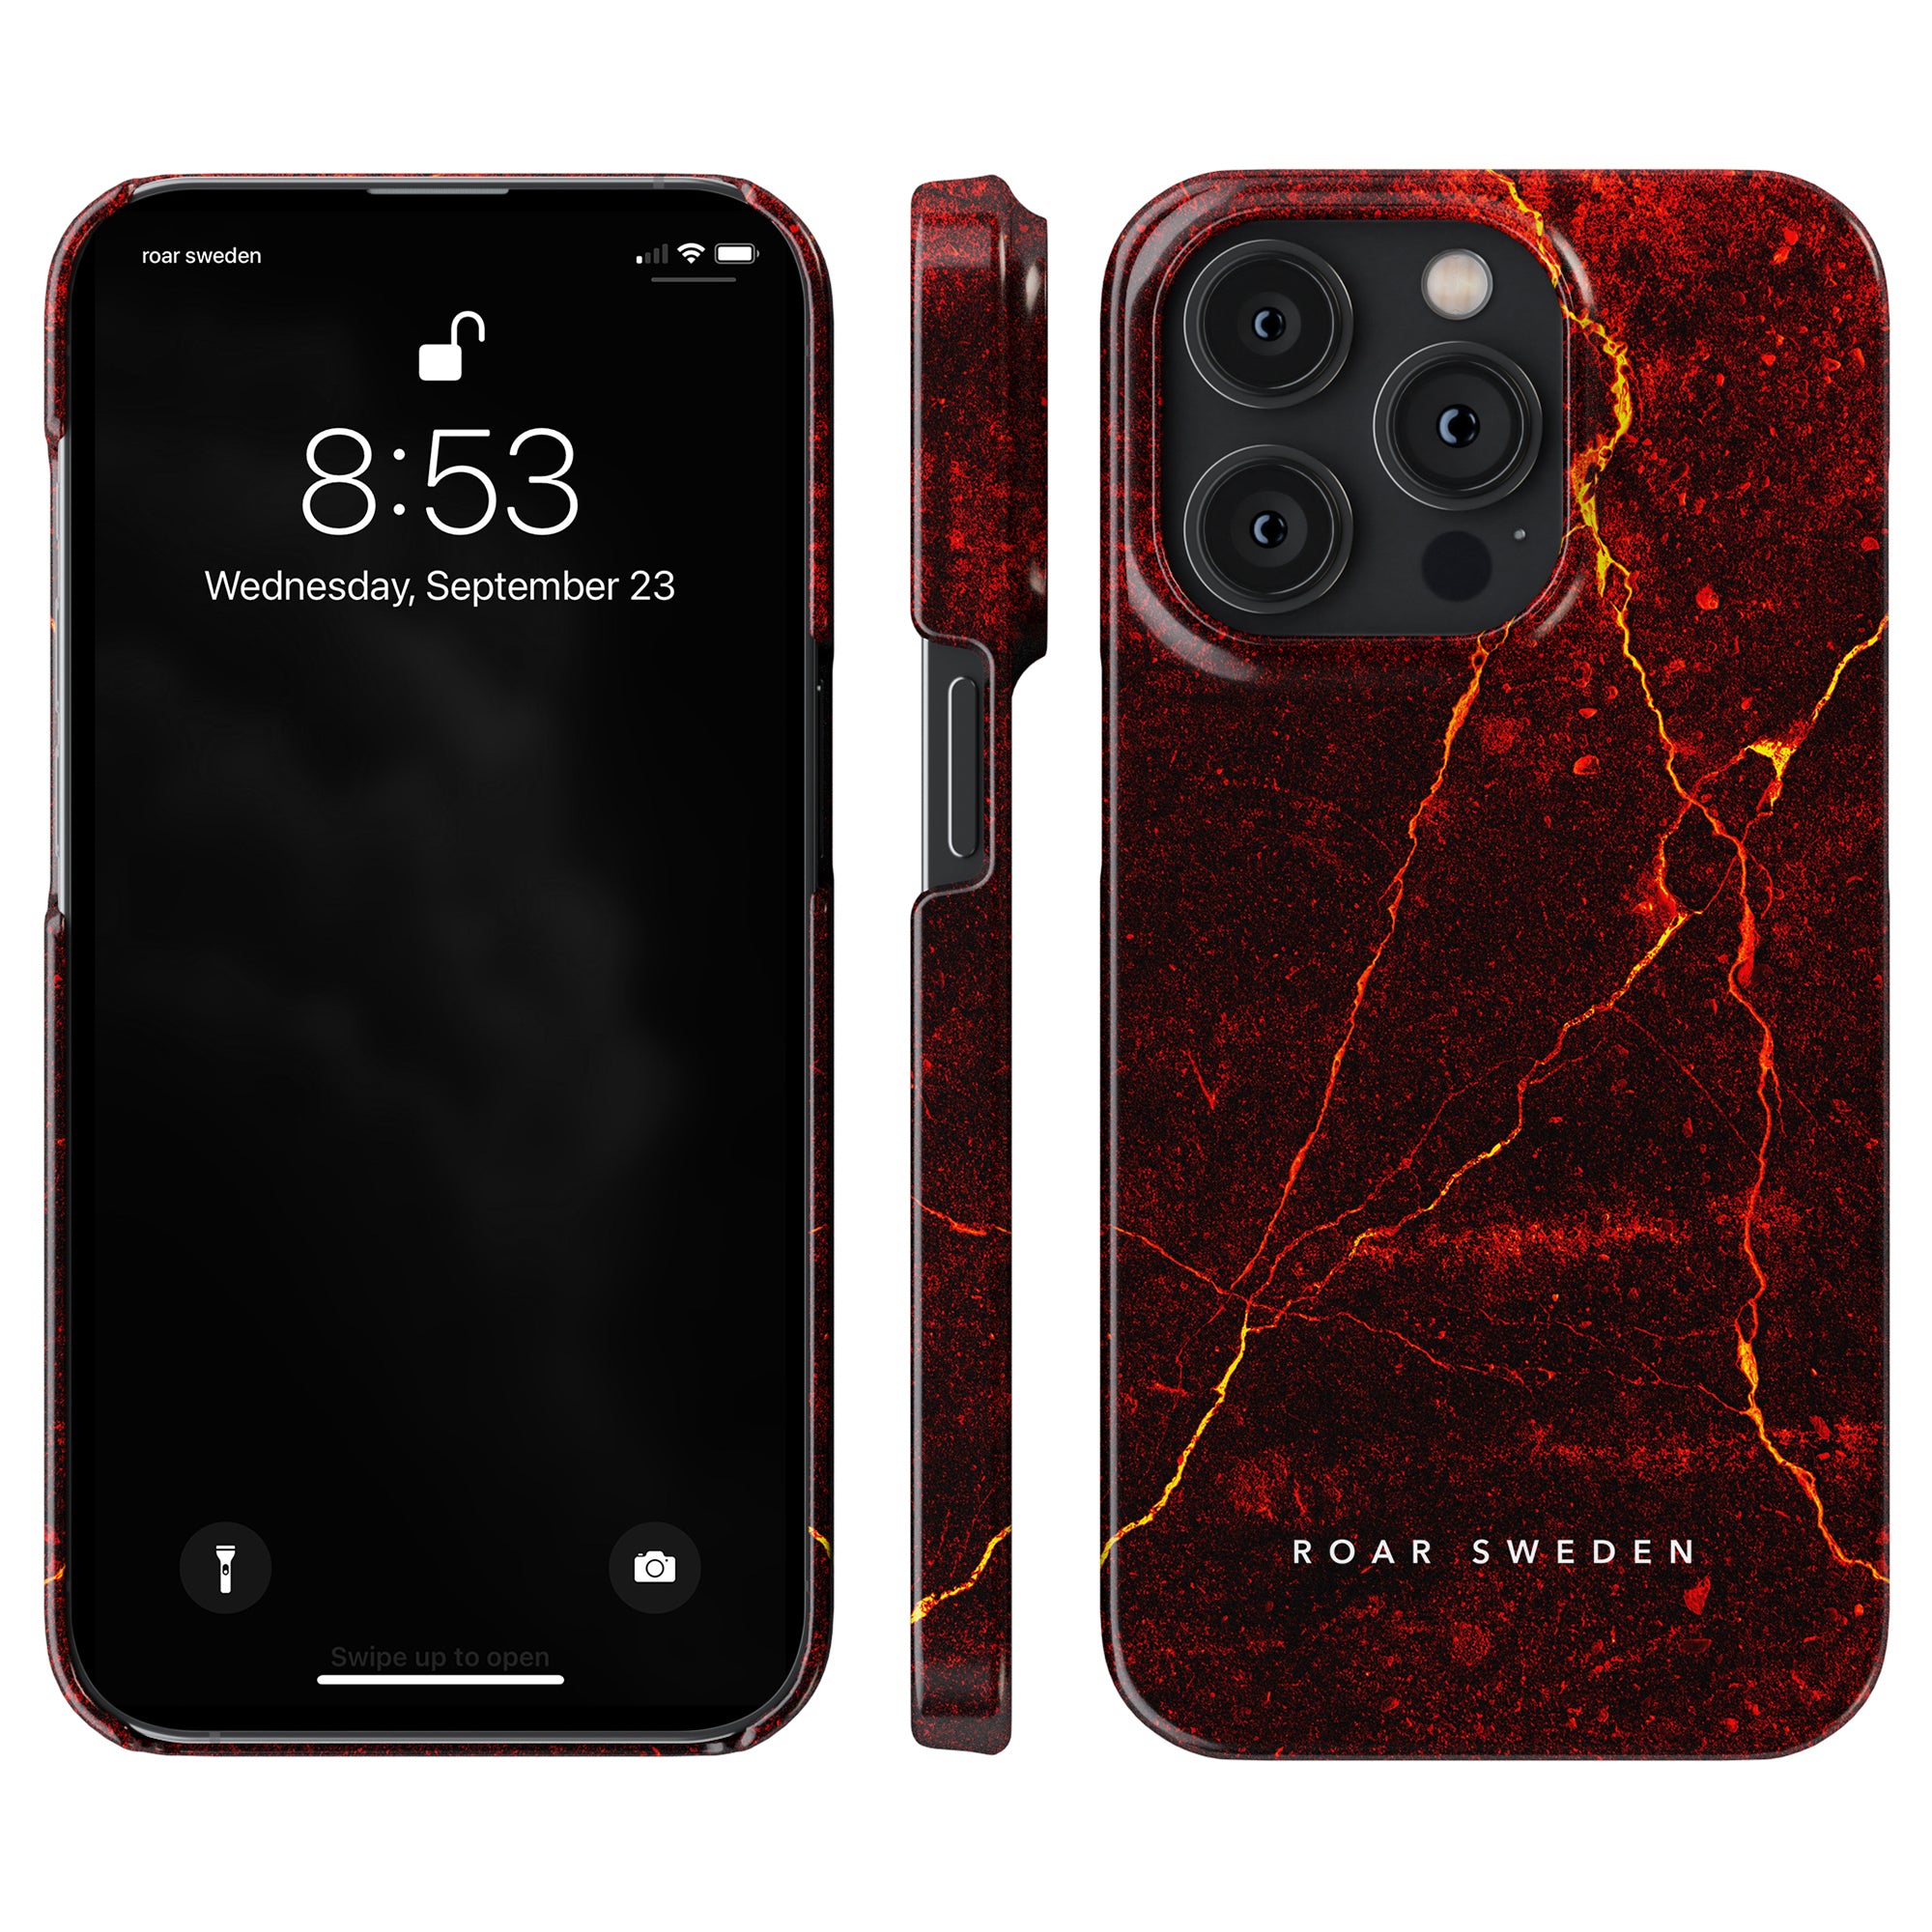 En röd marmor Caldera - Tunt fodral med svart bakgrund, perfekt för Samsung-användare.